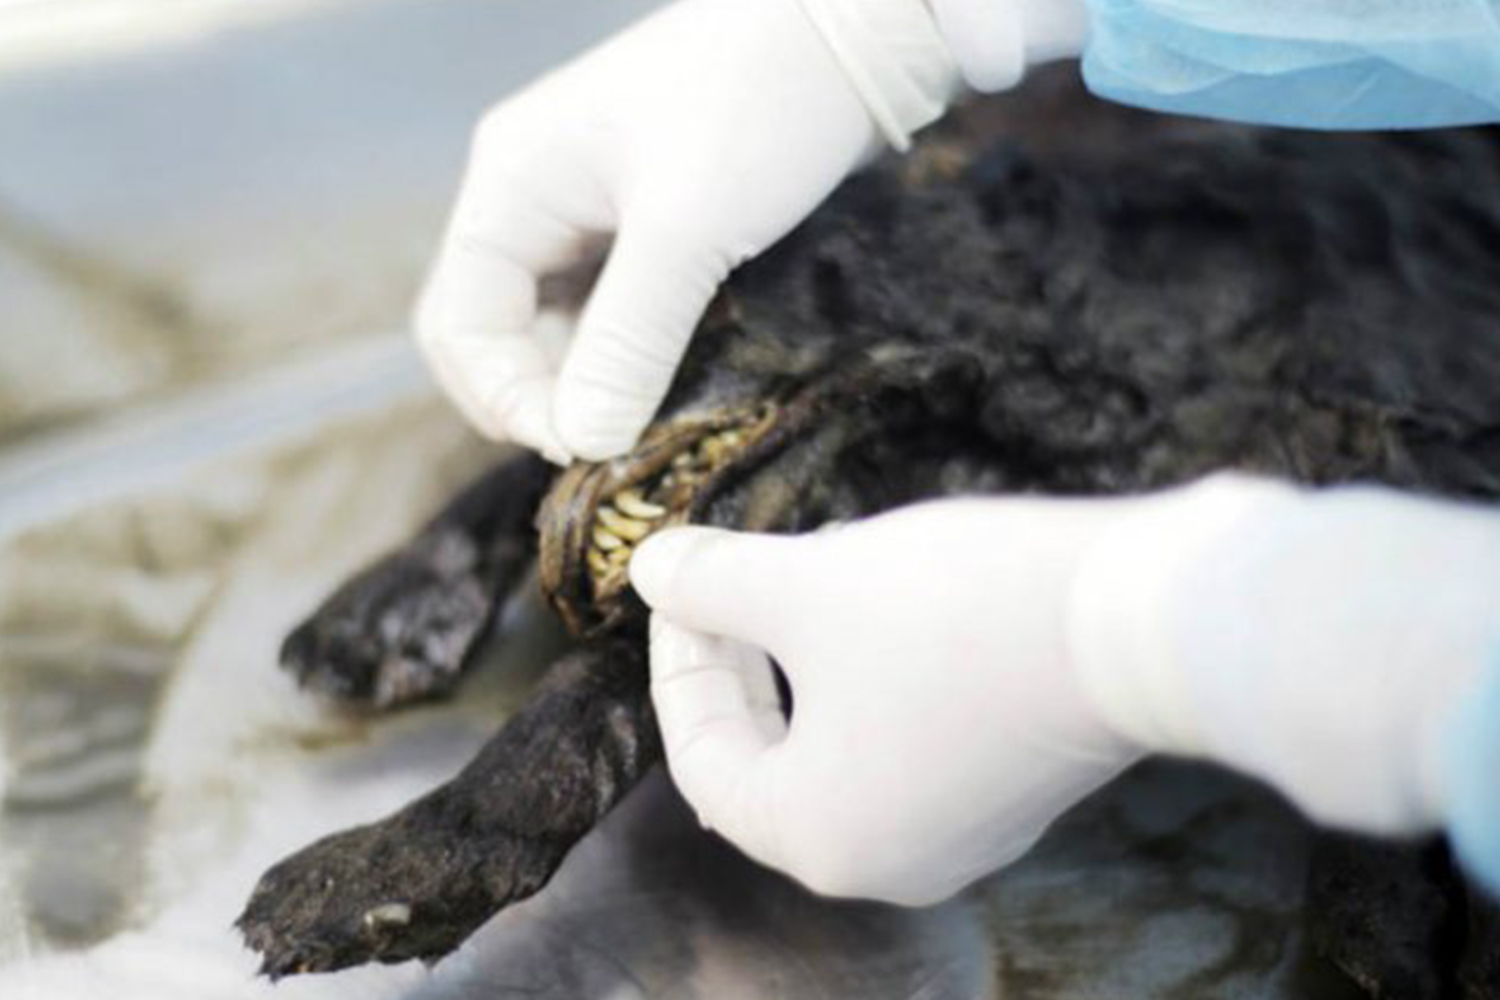 Encuentran un perro de 12.400 años de edad en Siberia